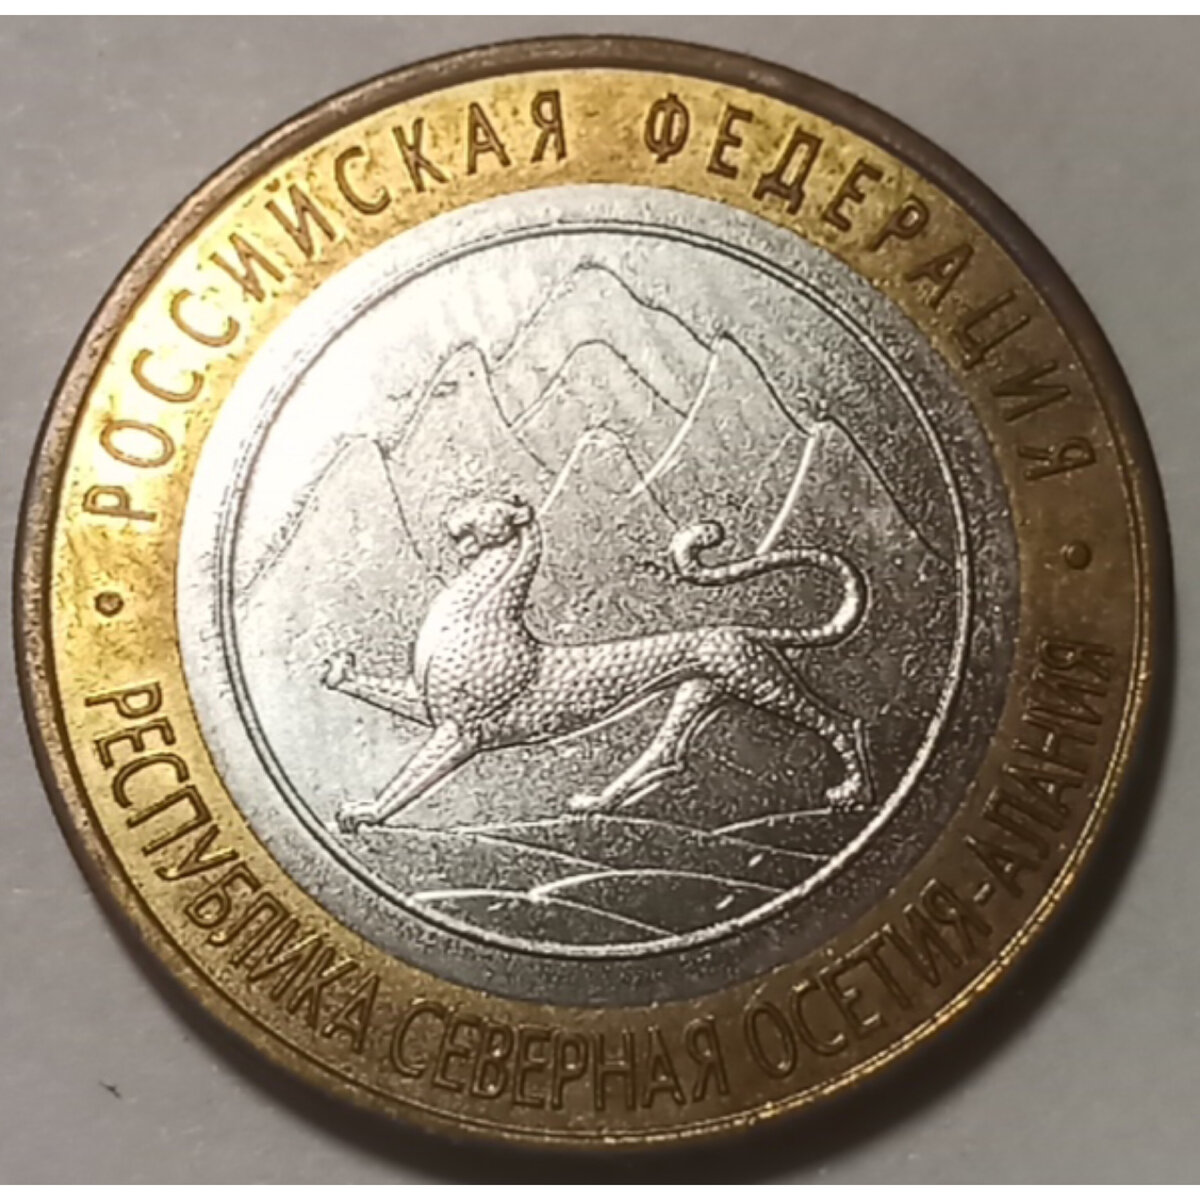 Аверс. Монета из собственной коллекции. Фото автора.